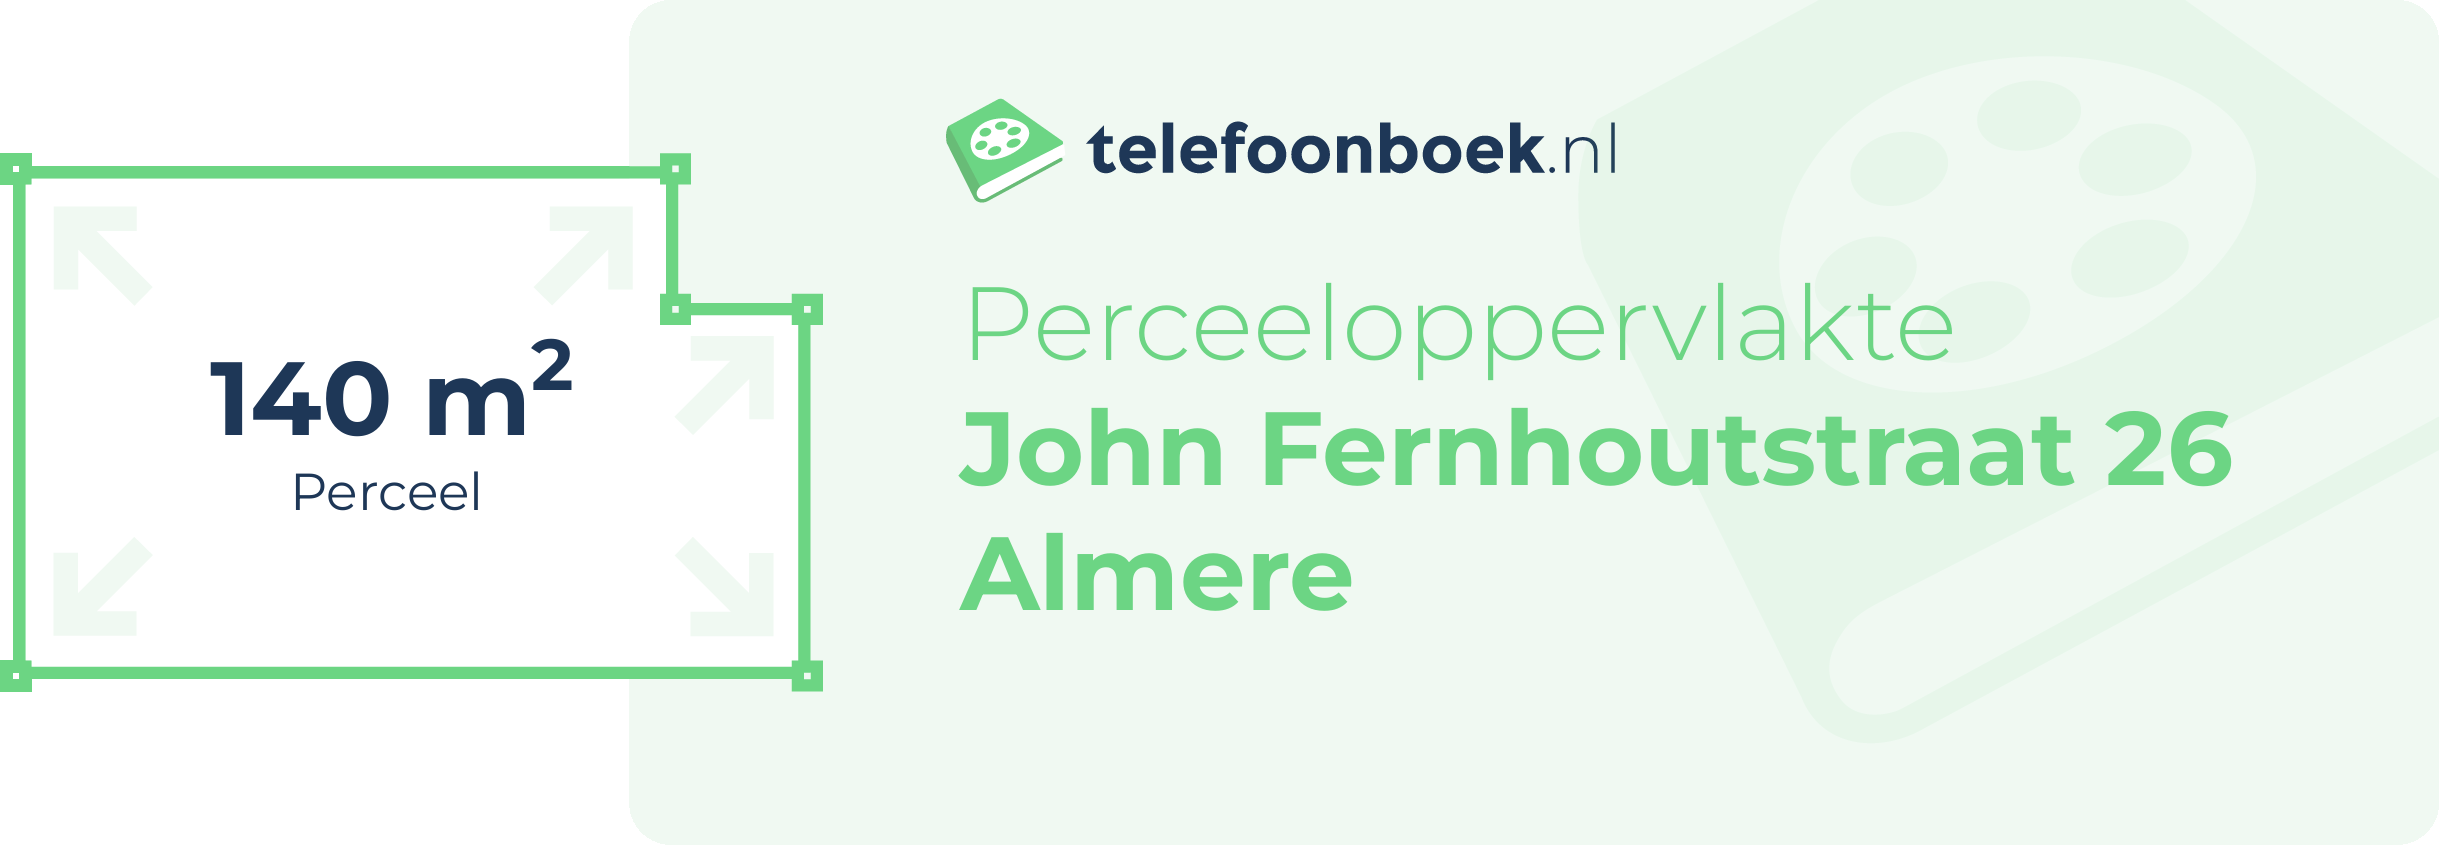 Perceeloppervlakte John Fernhoutstraat 26 Almere